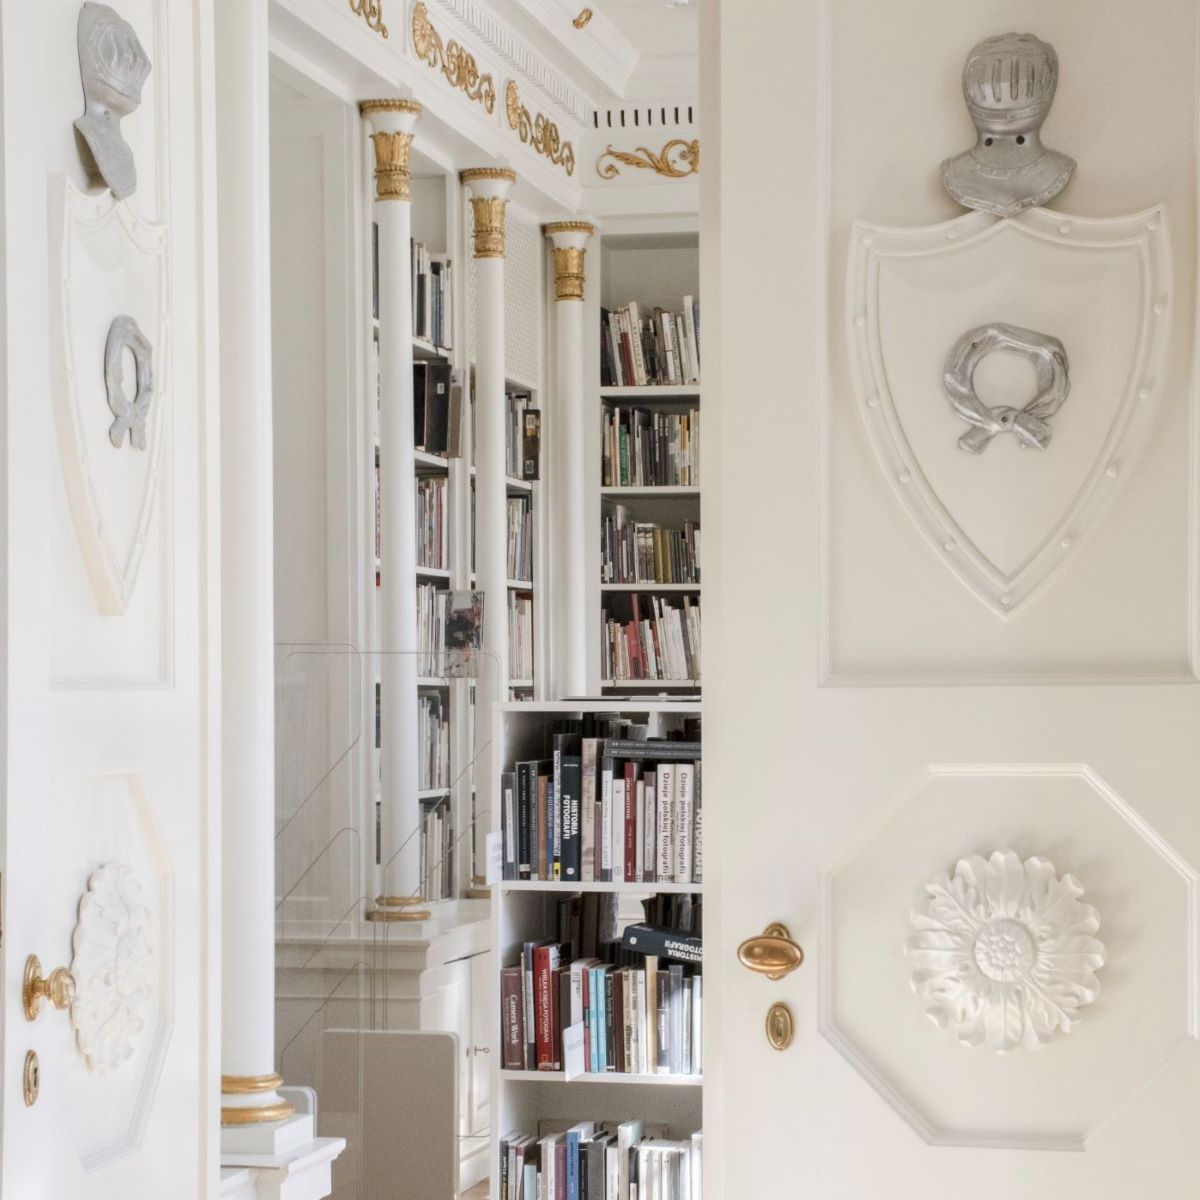 Fotografia do wydarzenia przedstawia białe drzwi ozdobione między innymi rzeźbioną rozetą, nałęczką z herbu rodu Raczyńskich i hełmem rycerskim. Jedno skrzydło drzwi jest otwarte, za nim jasne wnętrze z kolumnami i książkami.